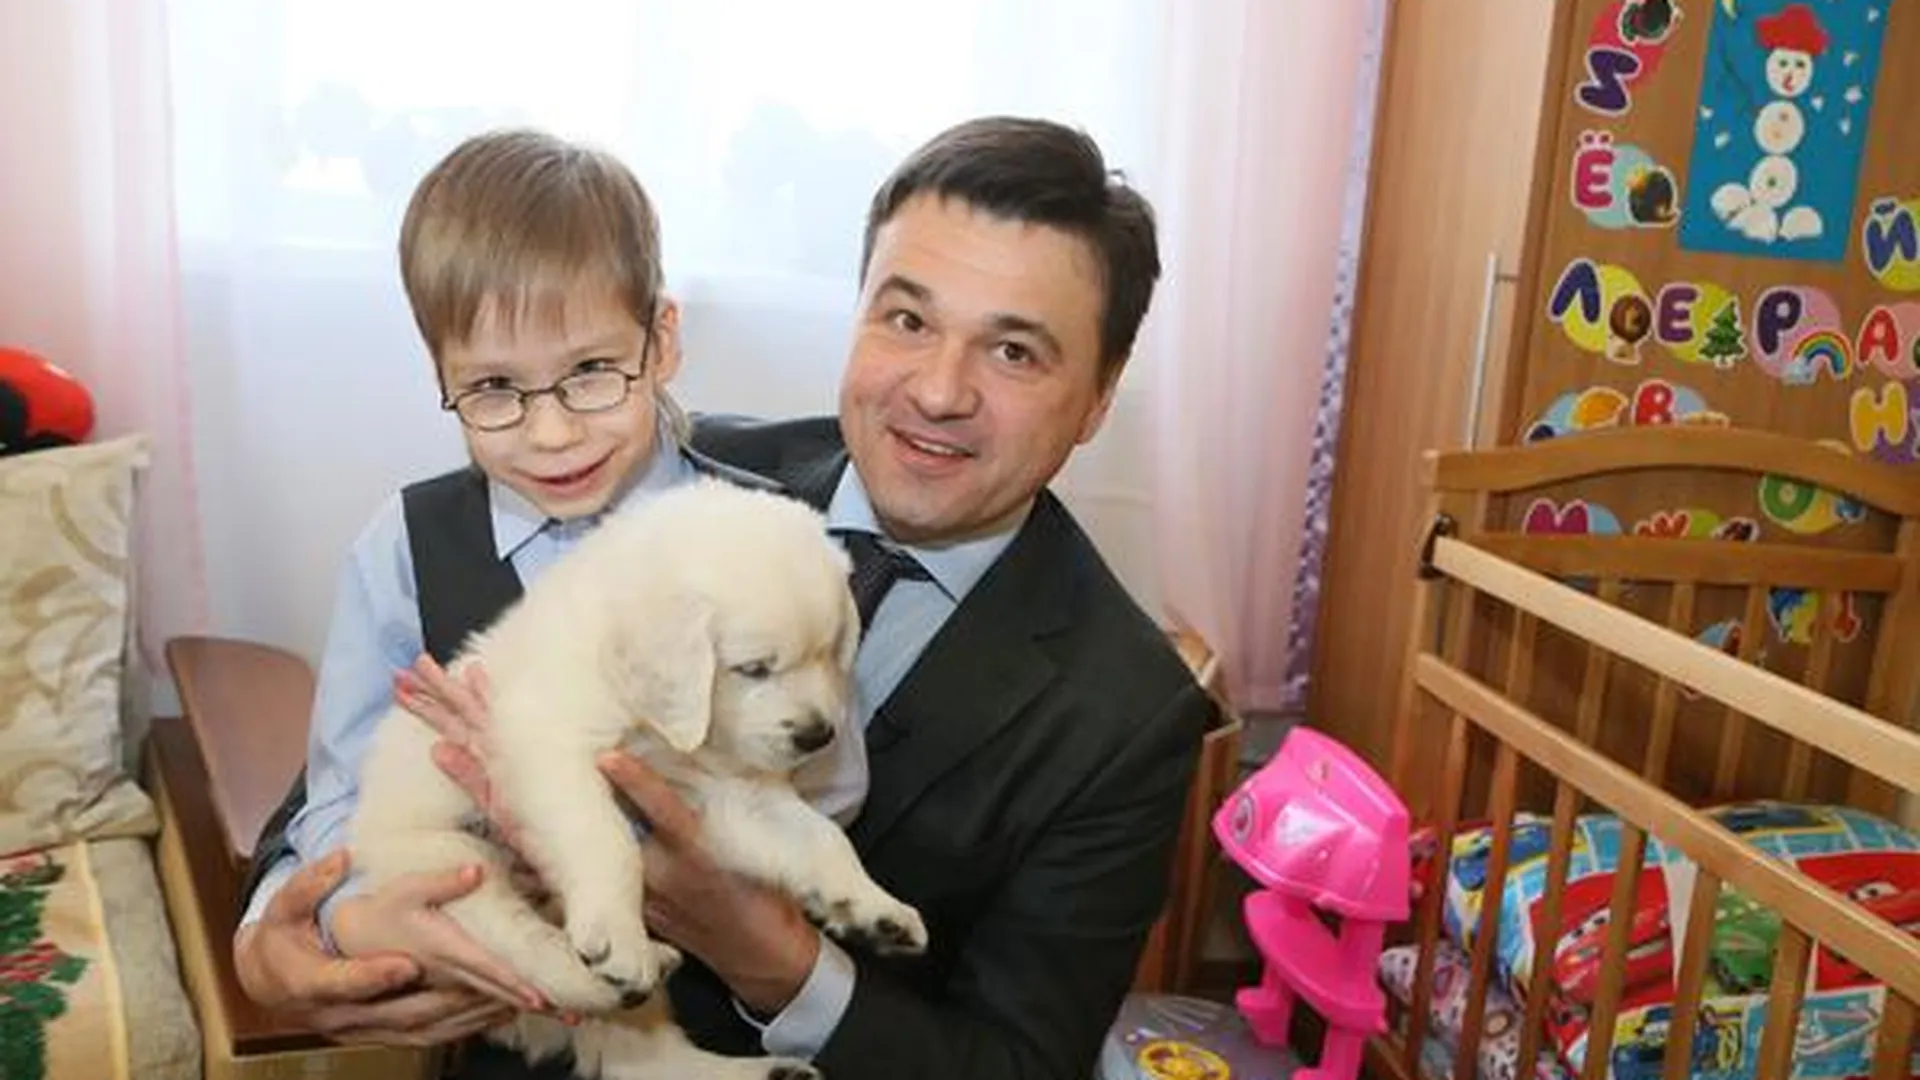 Щенок, подаренный год назад Андреем Воробьевым, исцелил маленького аутиста